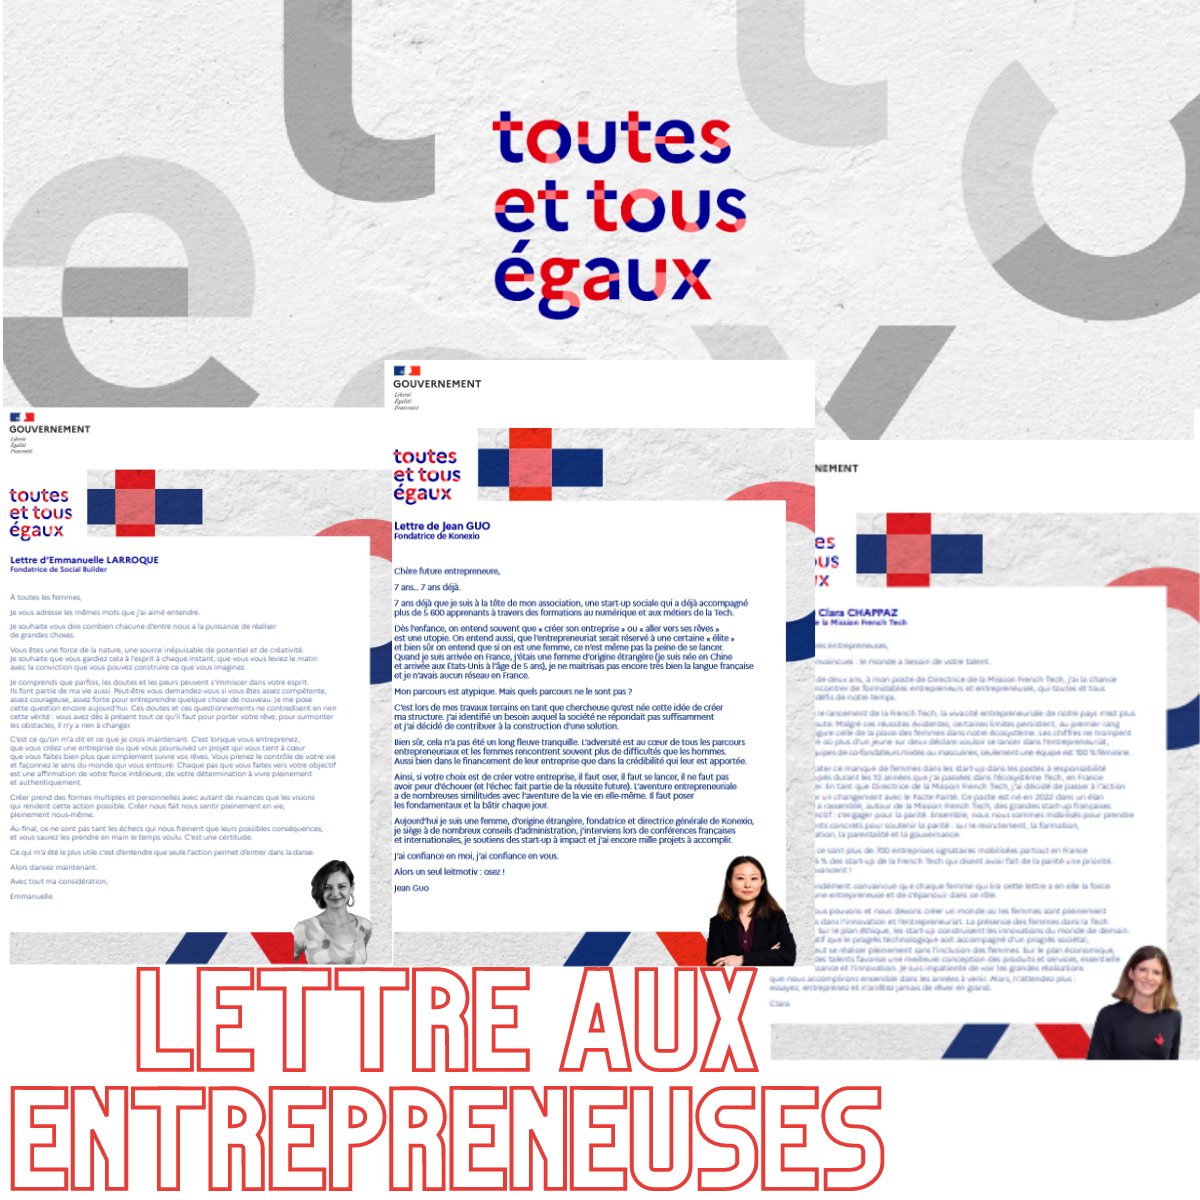 ❌ Seulement 30% des entrepreneurs en France sont des femmes📣 Incitons les femmes à créer leur entreprise #ToutesEtTousEgaux #8mars, 50 femmes s'associent au @gouvernementFR pour participer à une campagne impactante autour de l'entrepreneuriat féminin 🏃🏽‍♀️🧘🏻‍♀️👩🏿‍🤝‍👩🏻